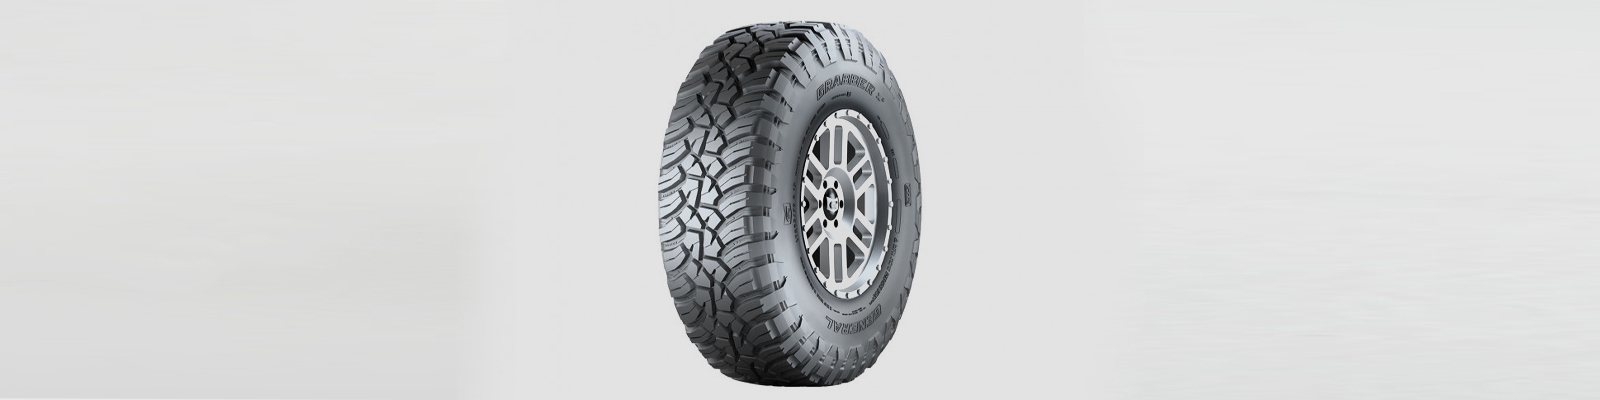 Off Road & Mud Terrain Tyres